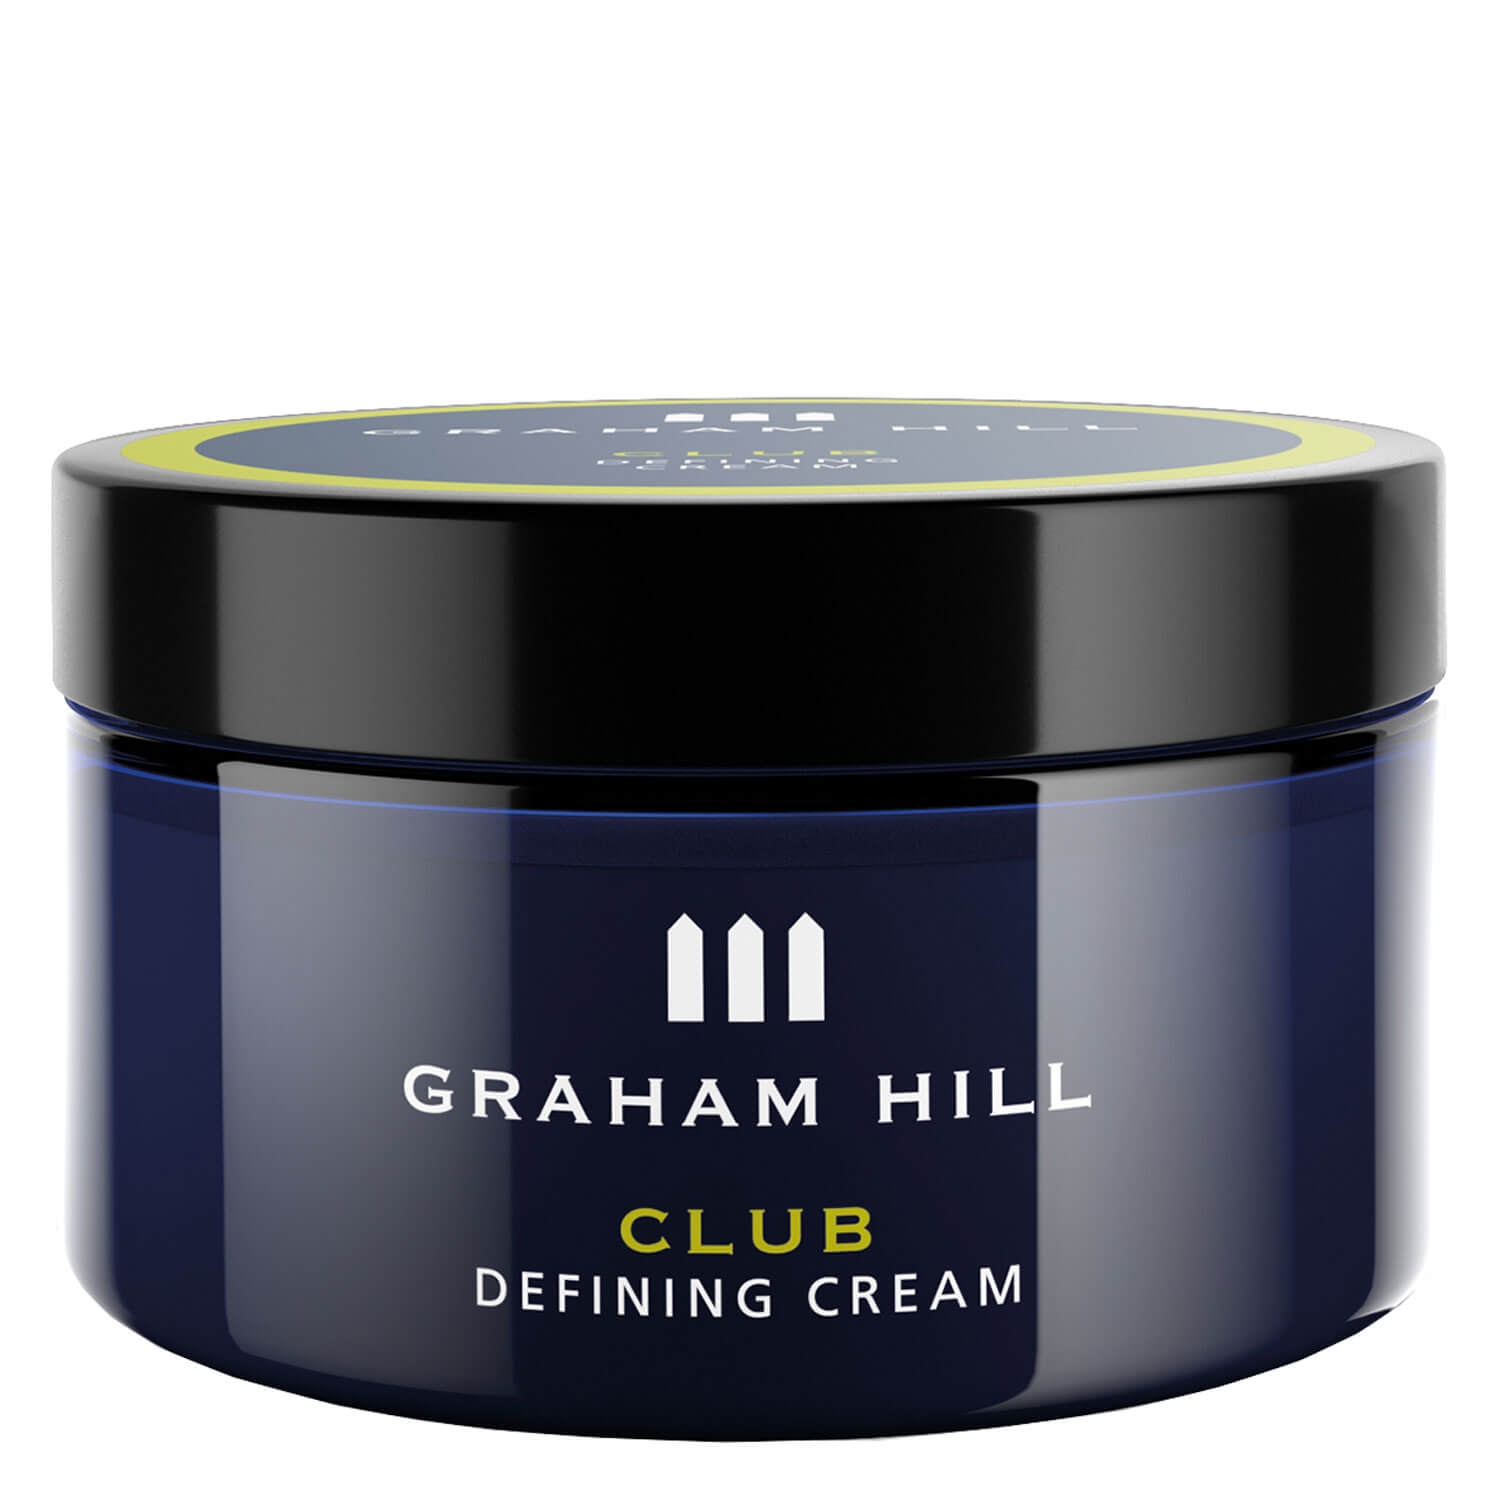 Produktbild von Styling & Grooming - Club Defining Cream